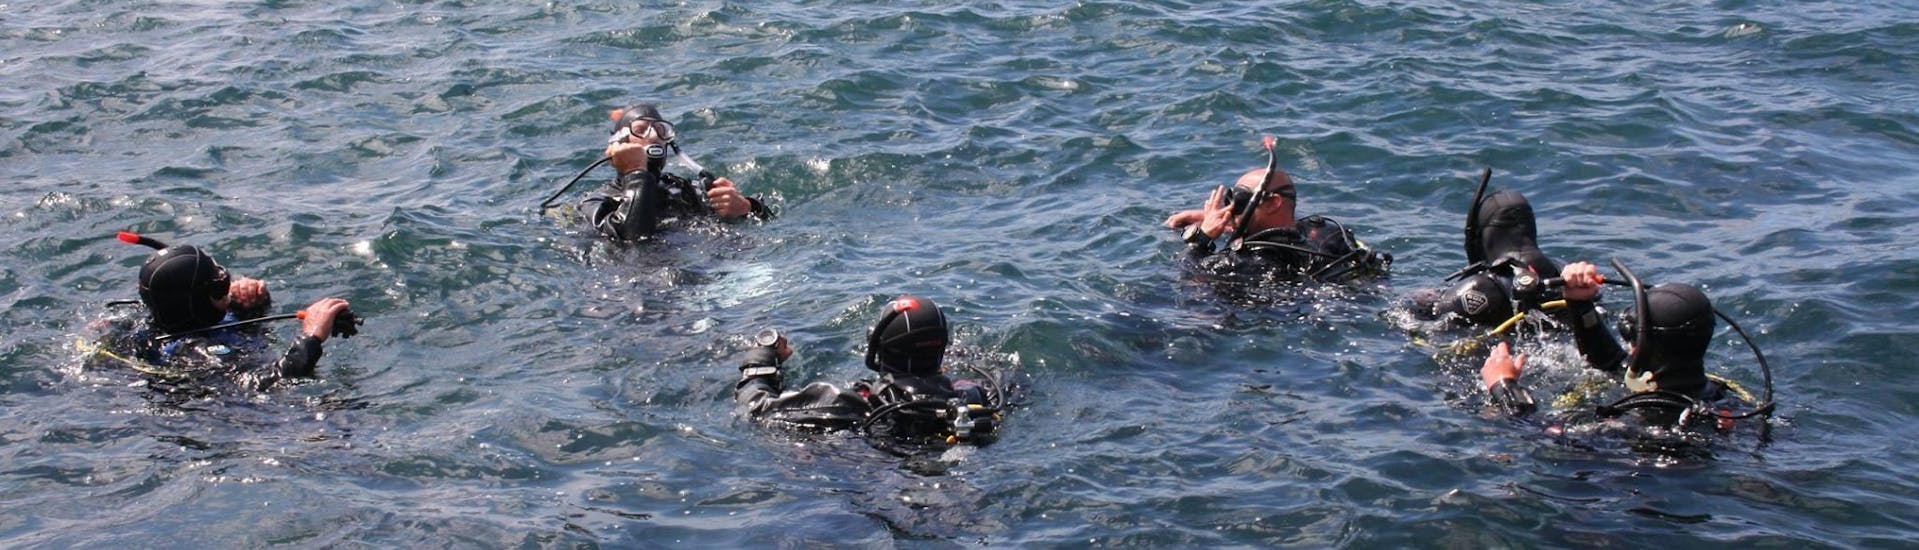 Les participants au Baptême de Plongée à Saint Paul's Bay avec Octopus Garden Diving Centre à Malte se préparent pour leur première plongée.